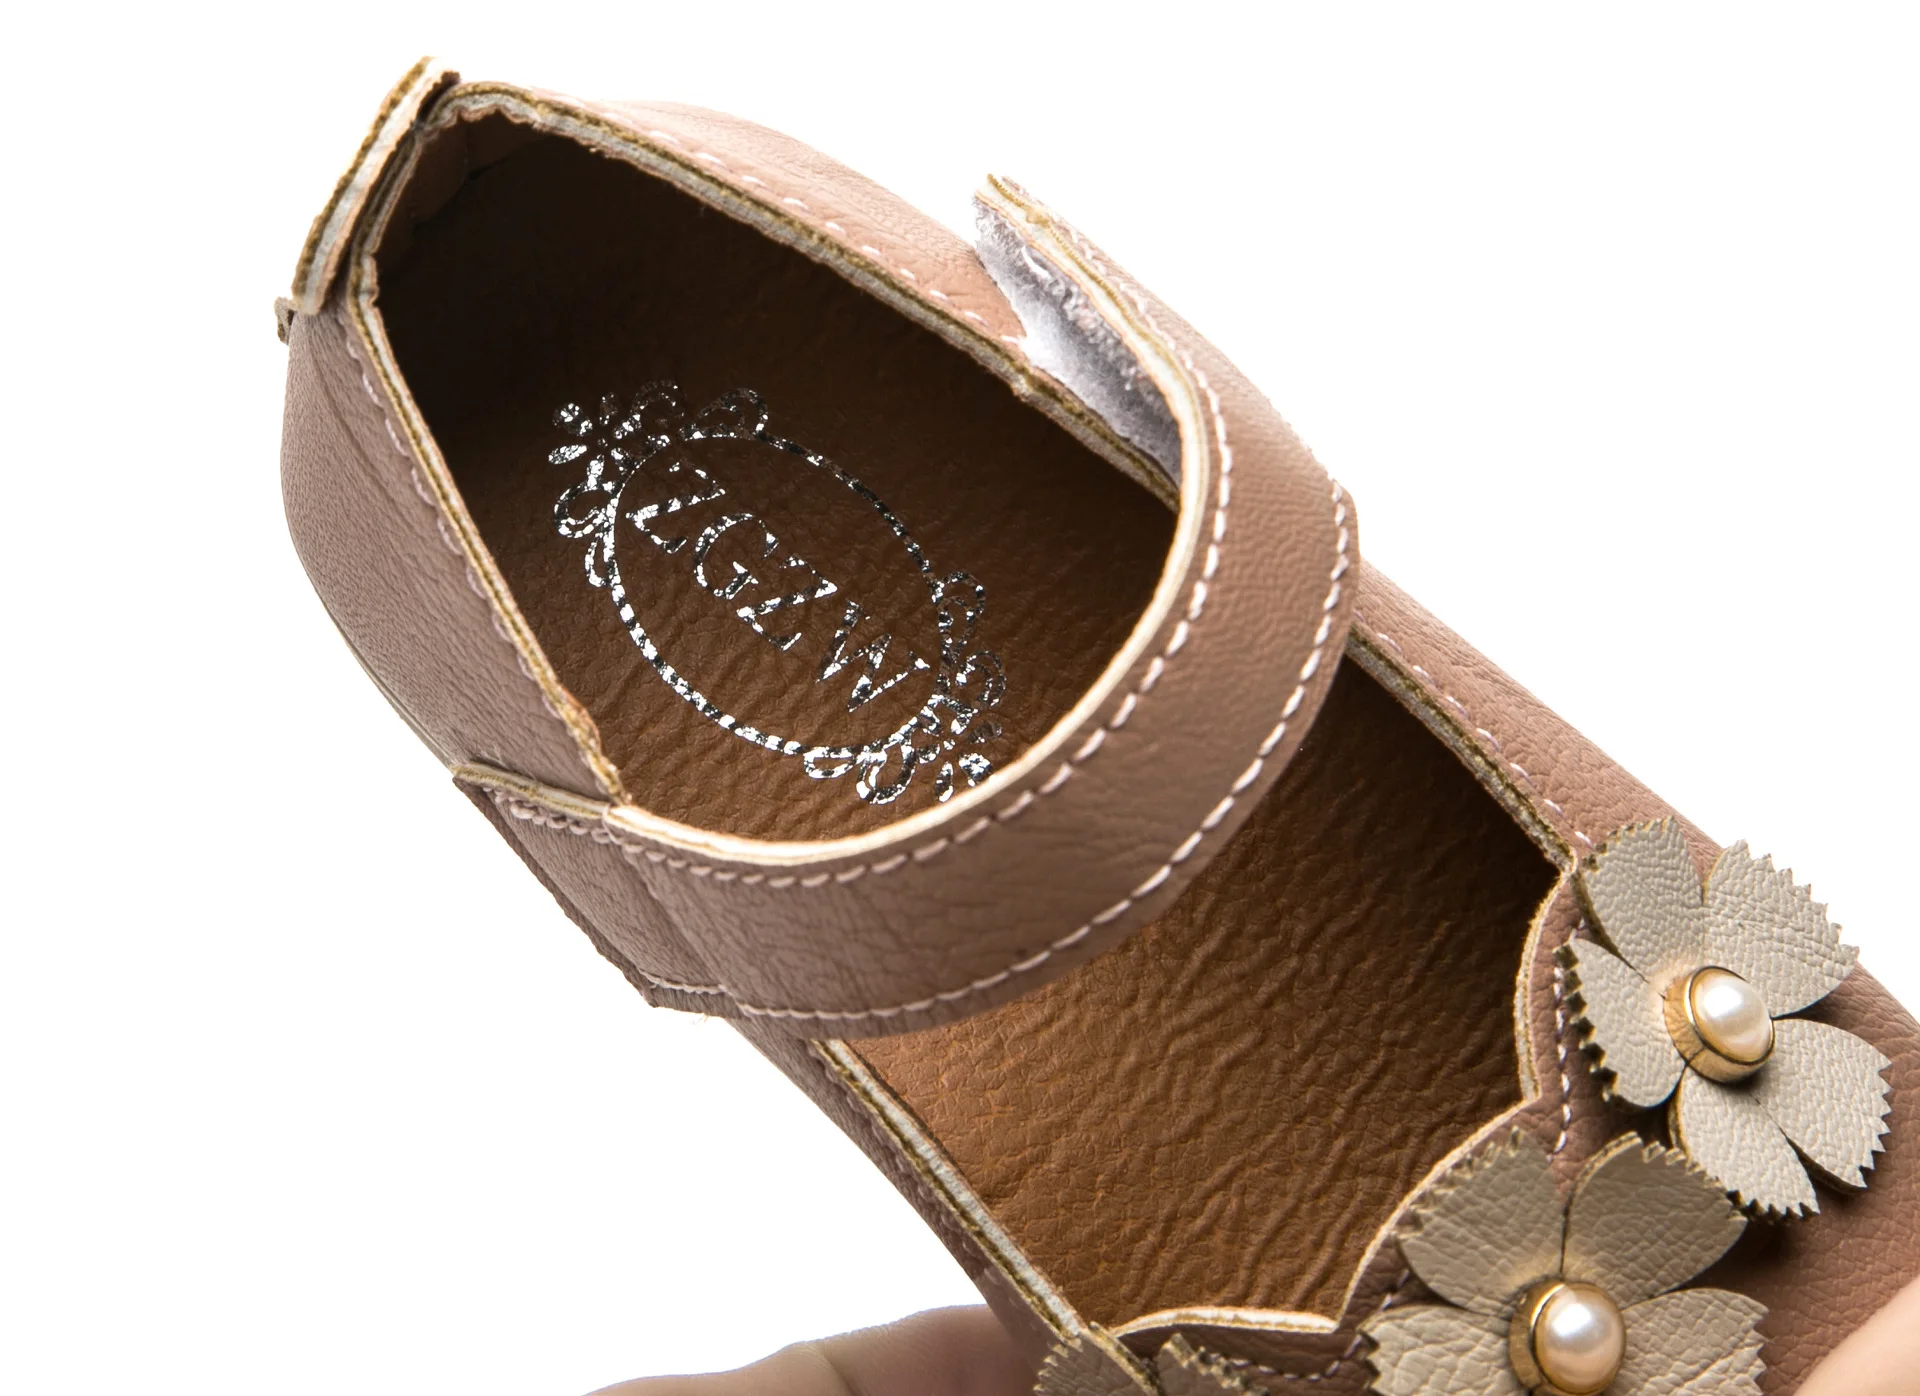 JUSTSL/ г. летняя детская повседневная обувь с мягкой подошвой Нескользящая обувь принцессы для девочек милая детская обувь с цветами размеры 21-30